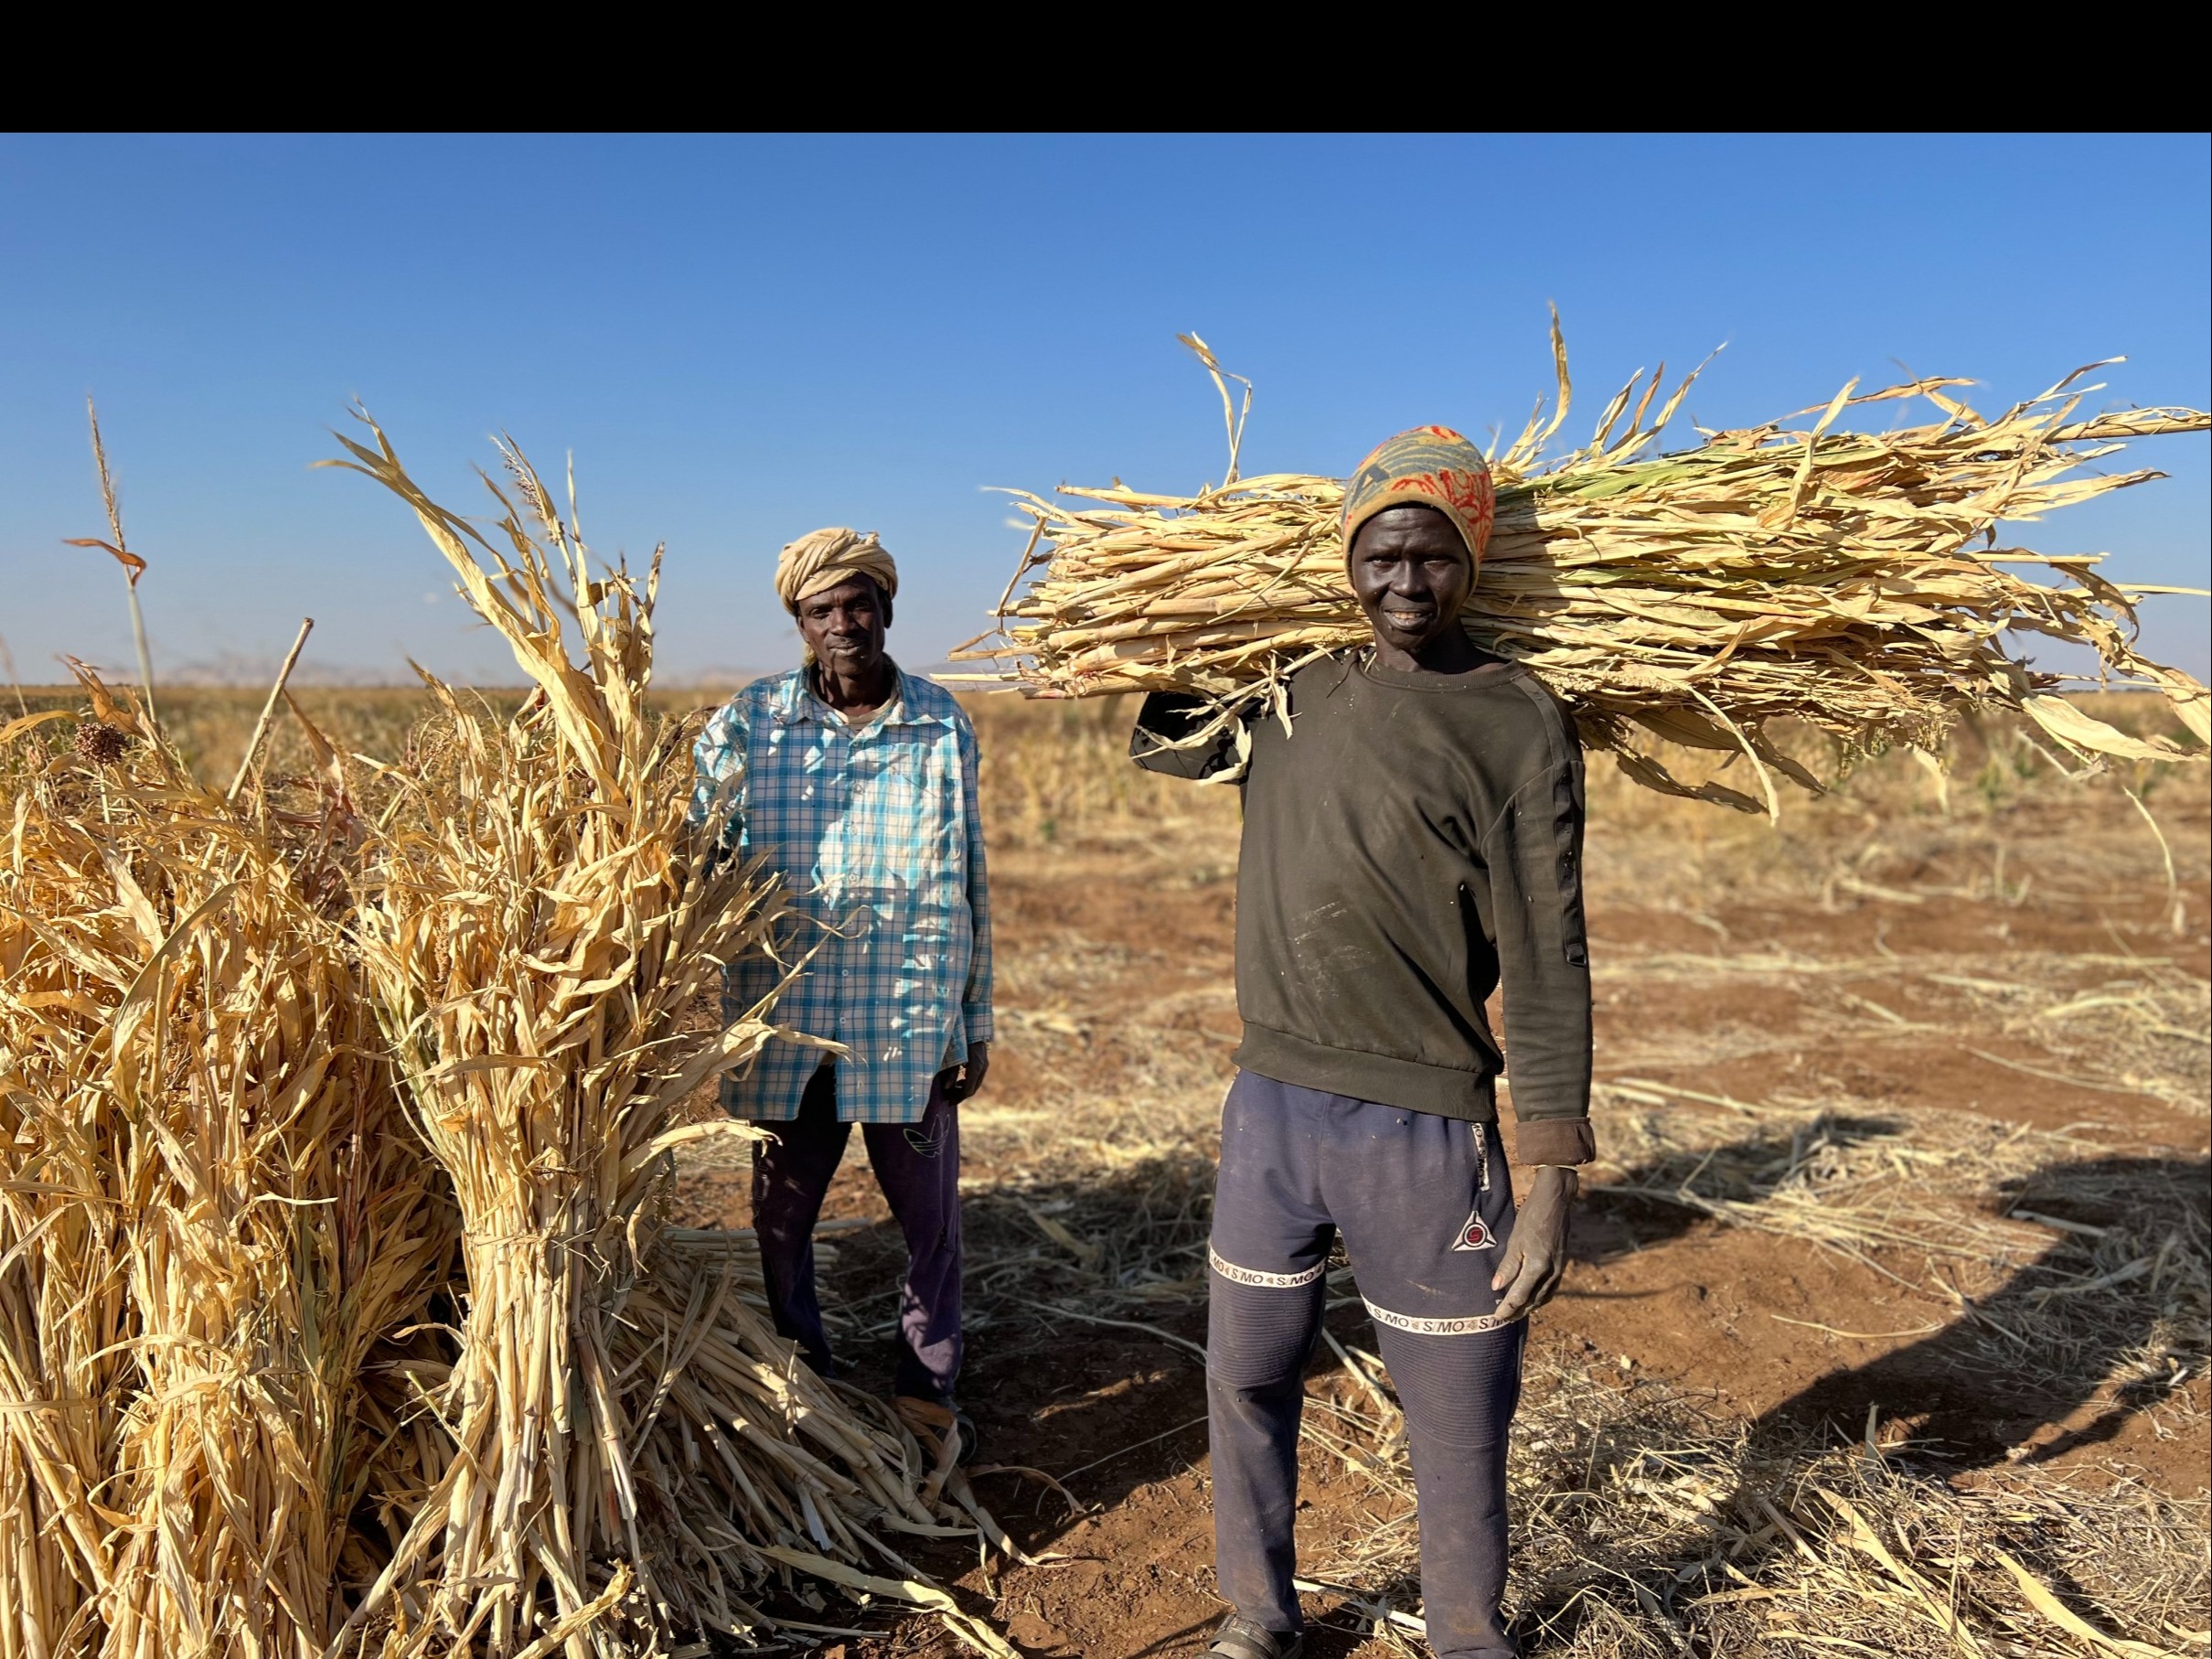 السودان: منظمة الأغذية والزراعة تطلق خطة استجابة طارئة لحماية سبل العيش  الزراعية وإصلاحها في ظلّ الصراع القائم